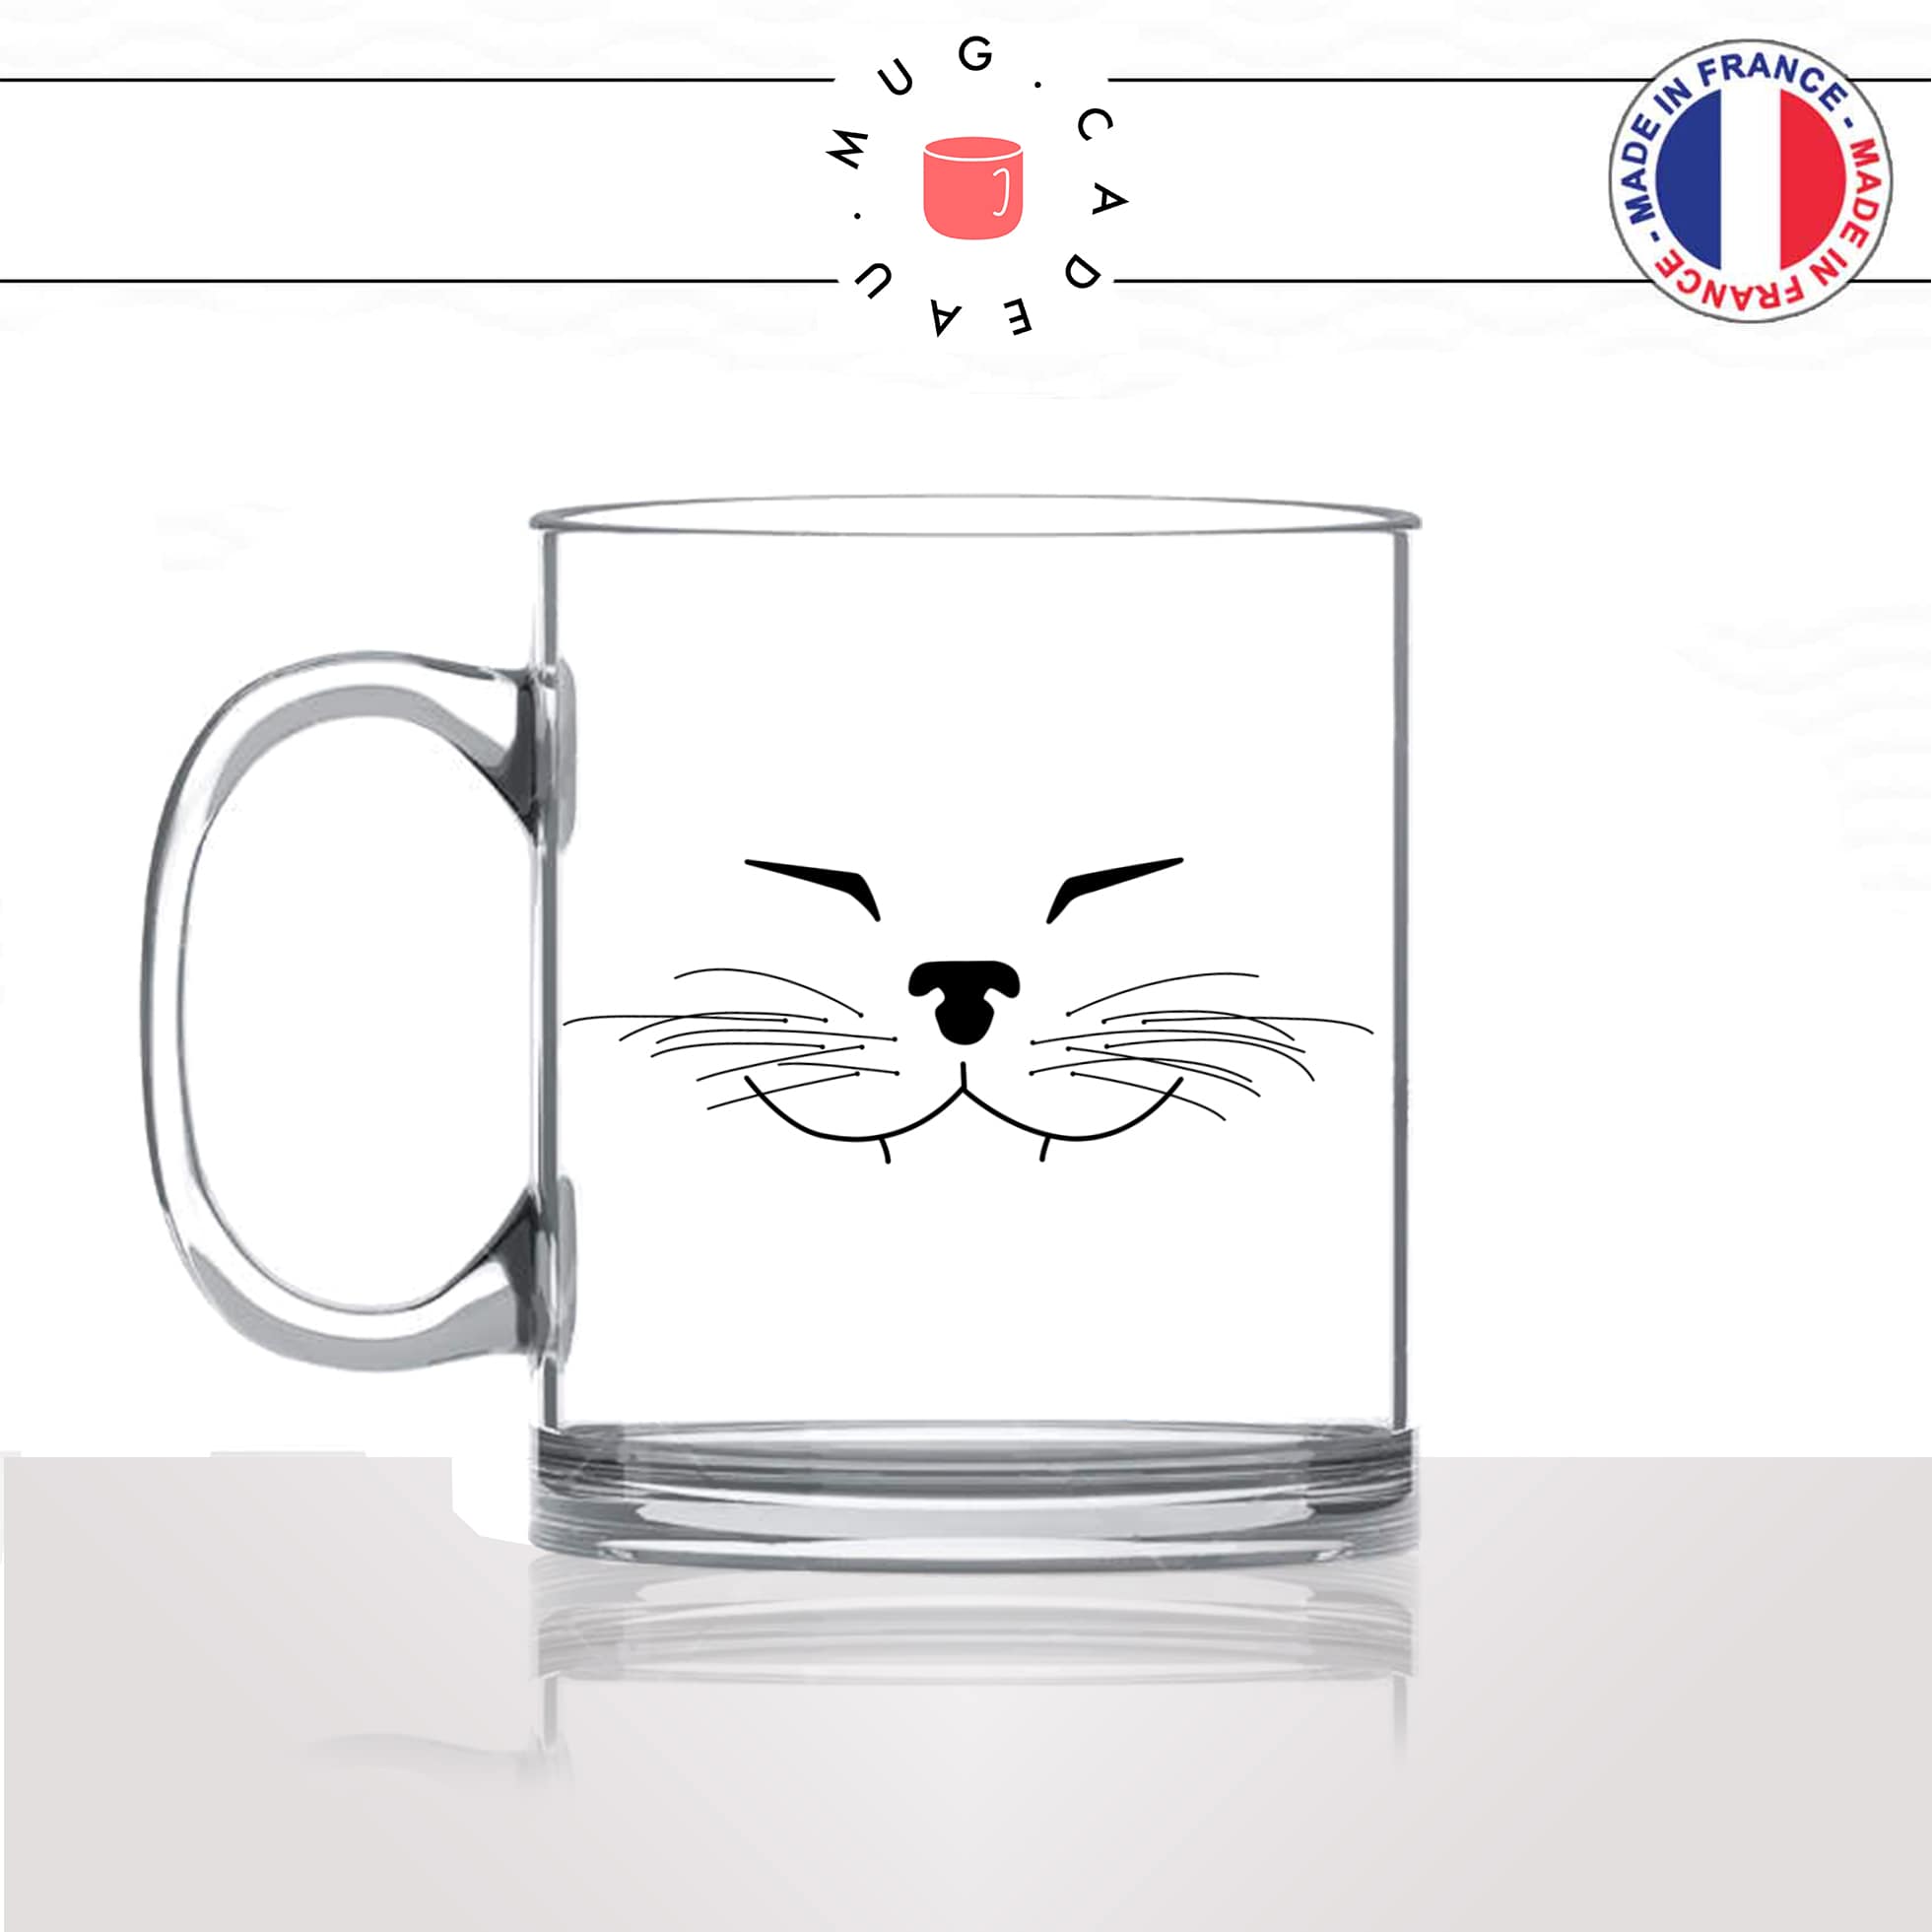 mug-tasse-en-verre-transparent-tete-de-chat-content-moustaches-mignon-animal-chaton-noir-fun-café-thé-idée-cadeau-original-personnalisé-min